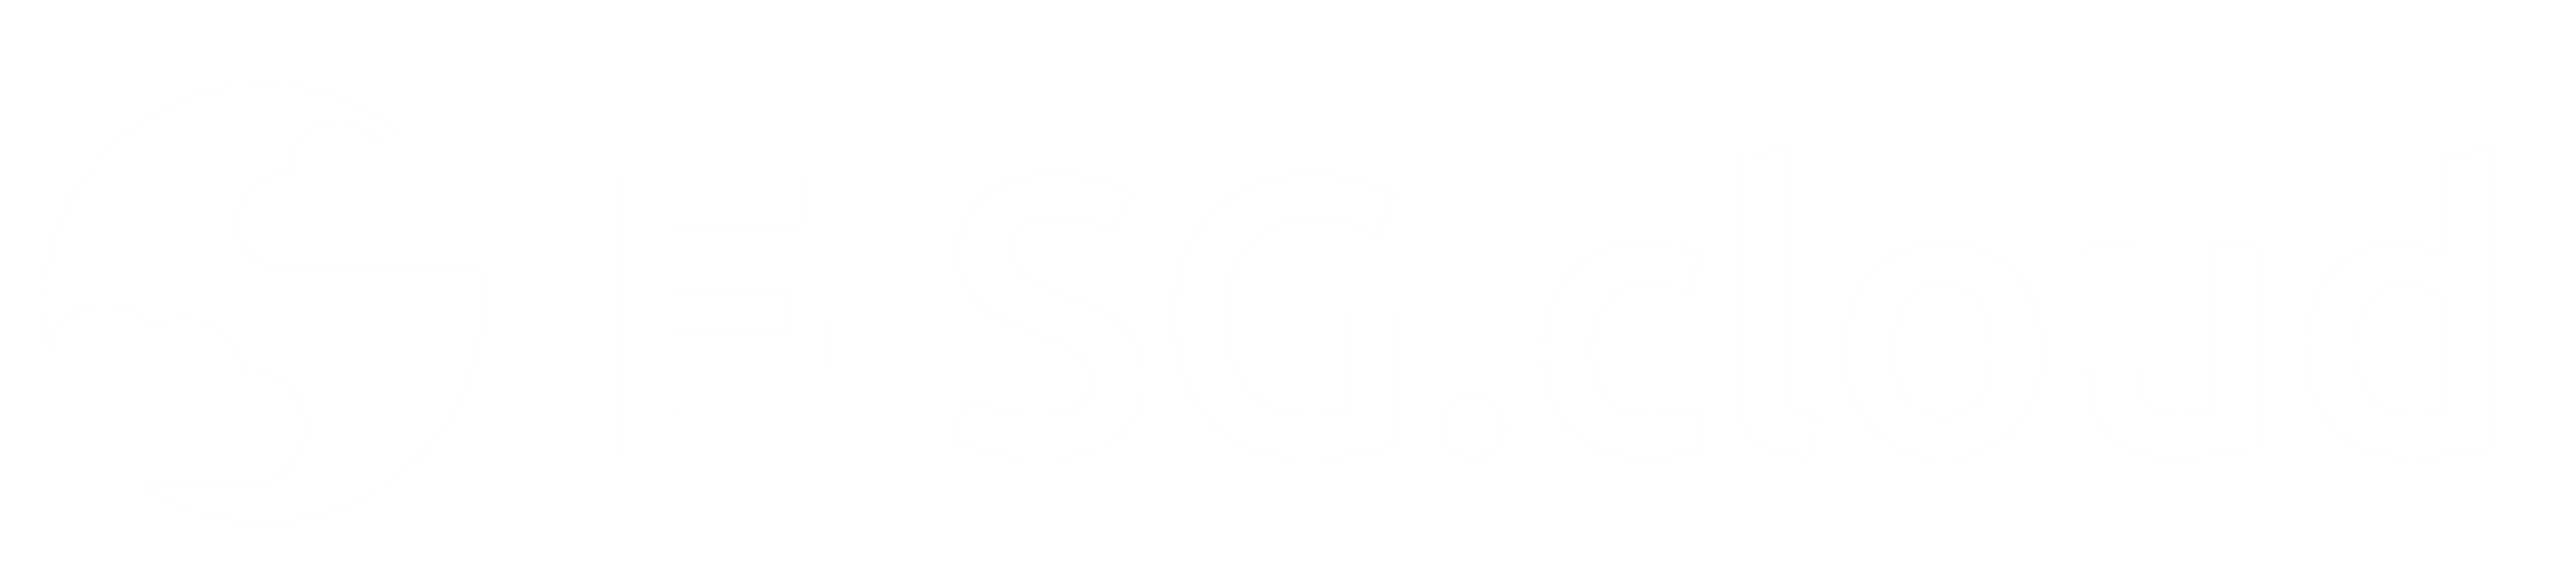 esg_logo_white-01